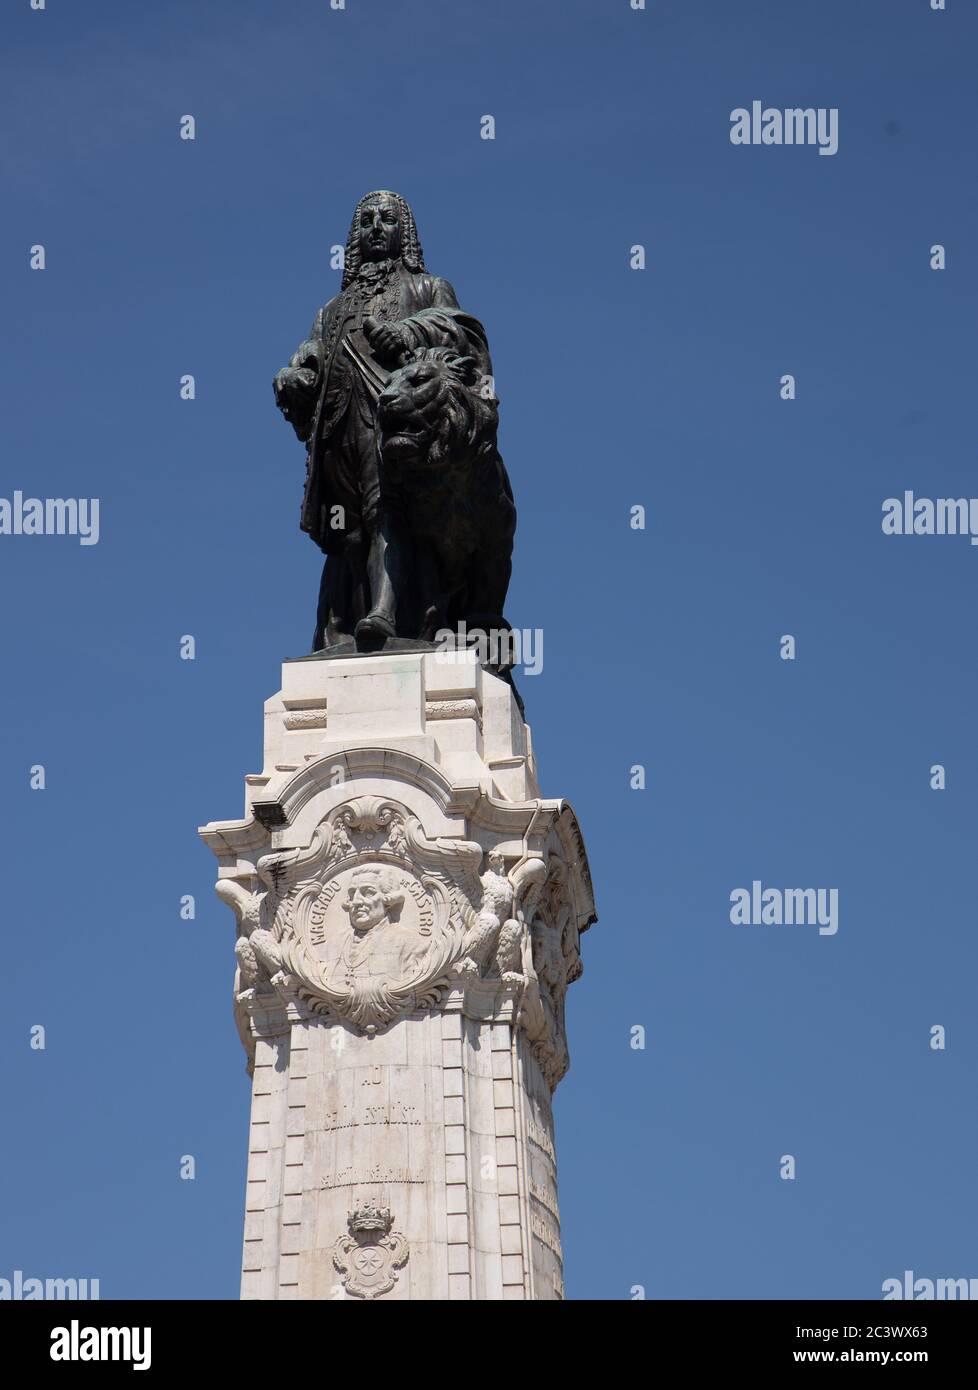 Statue de Marquis de Pombal sur la place Pombal. Gouverneur de Lisbonne de 1750 à 1777..contre ciel bleu clair Banque D'Images